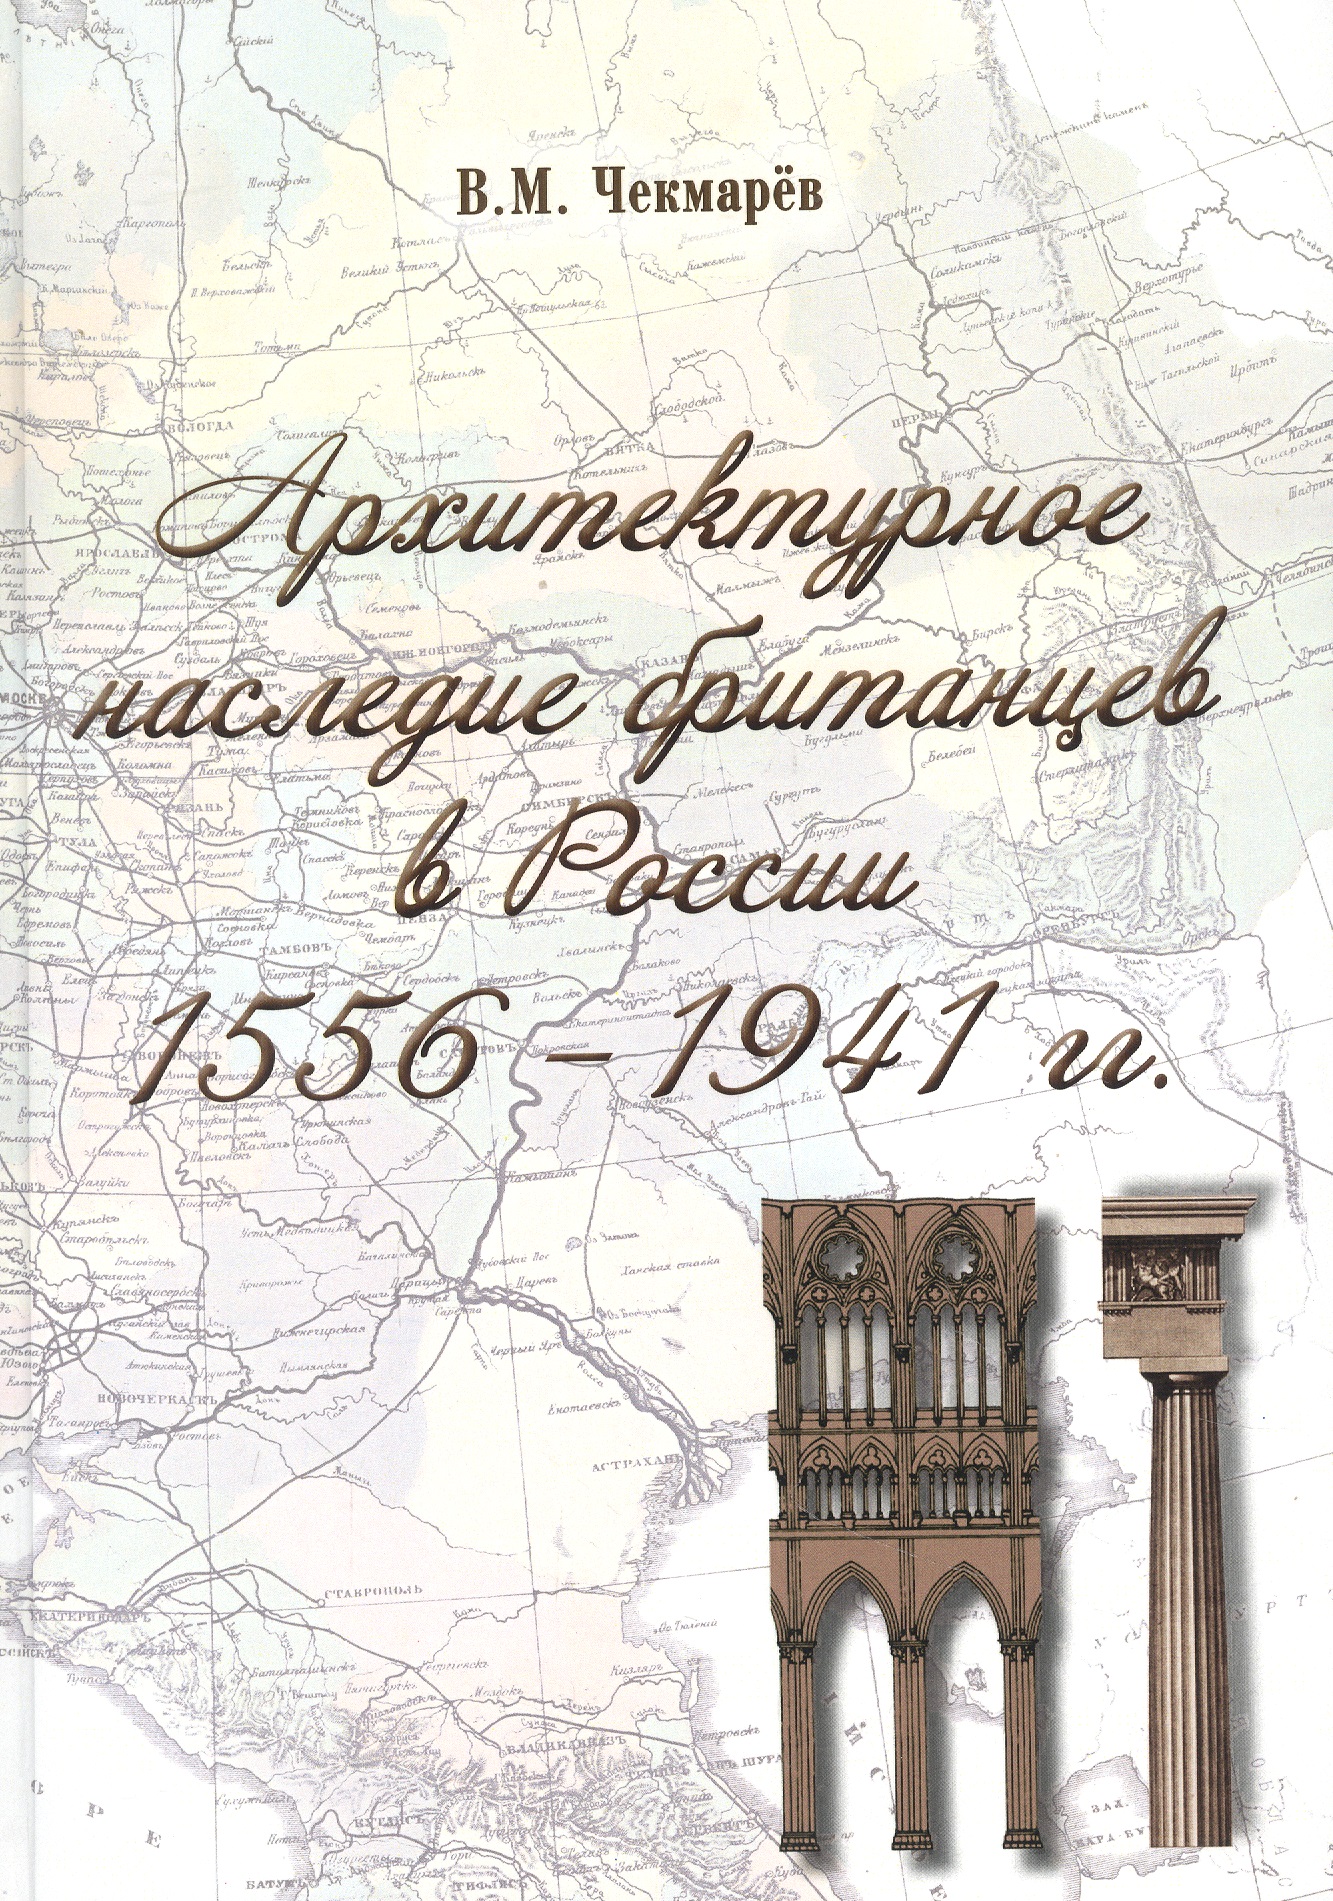     . 1556-1941 